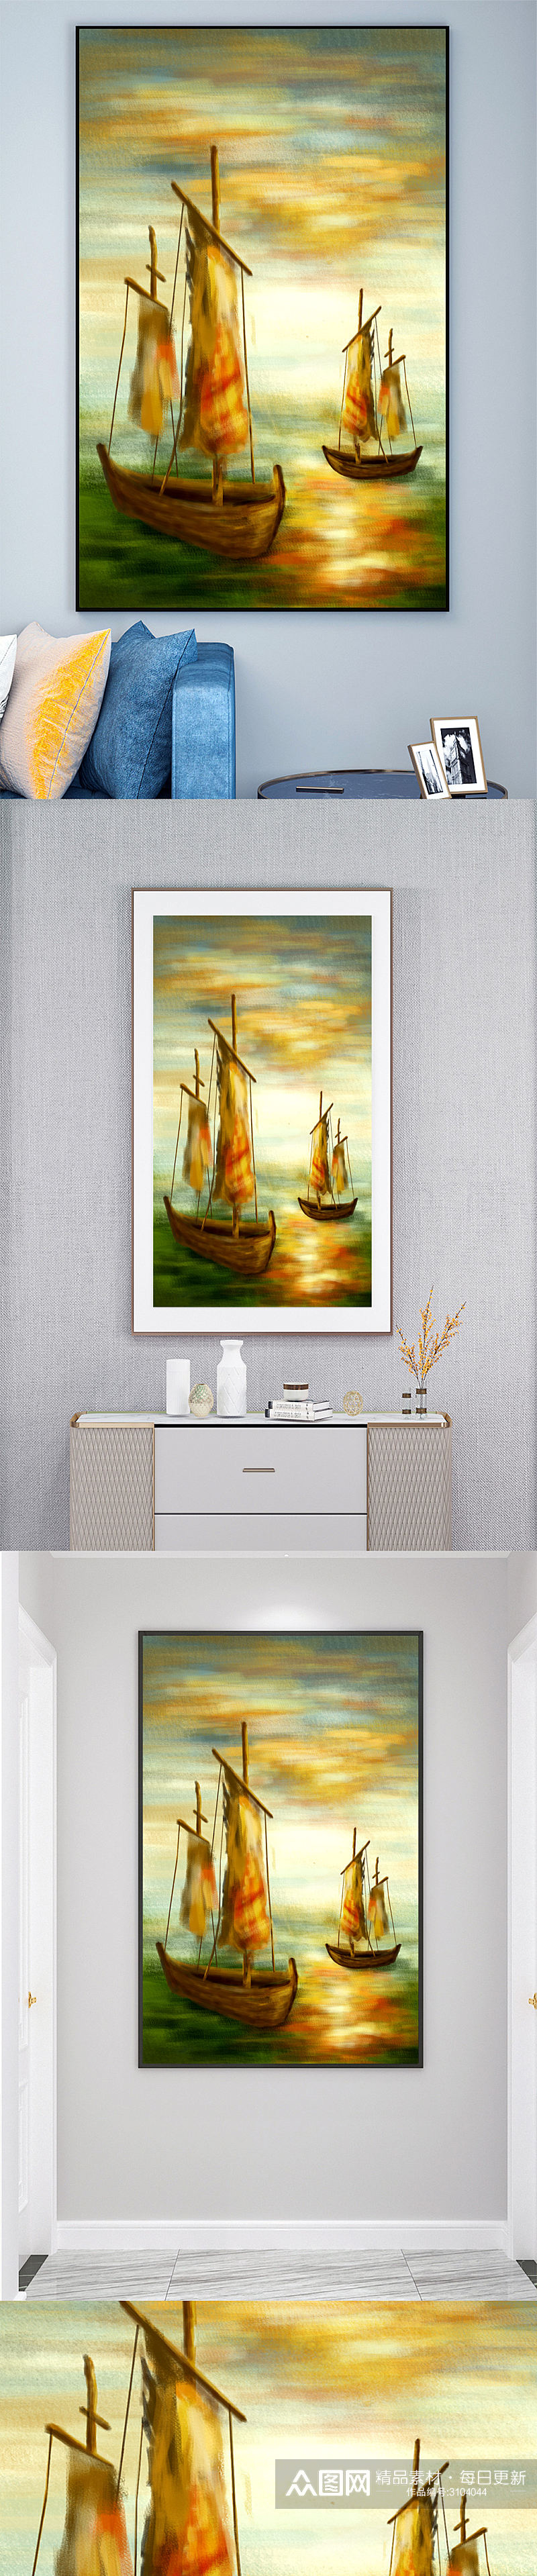 油画帆船壁画装饰画素材